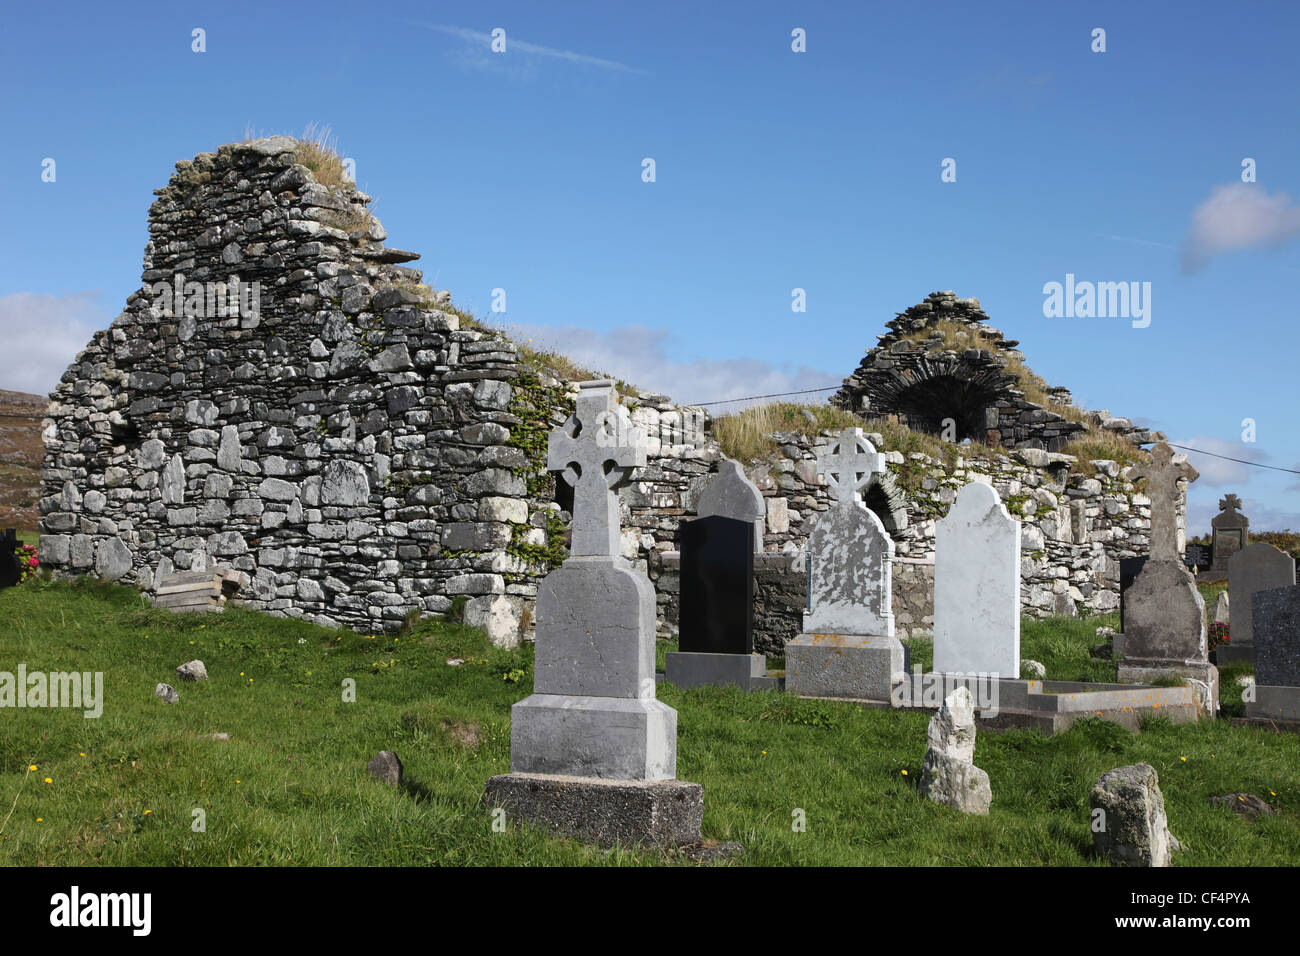 Cimetière de Lough Derg, nommé d'après Naomh Caitairin, un des premiers chrétiens saint qui a fondé un couvent à proximité sur le Beara Peninsu Banque D'Images